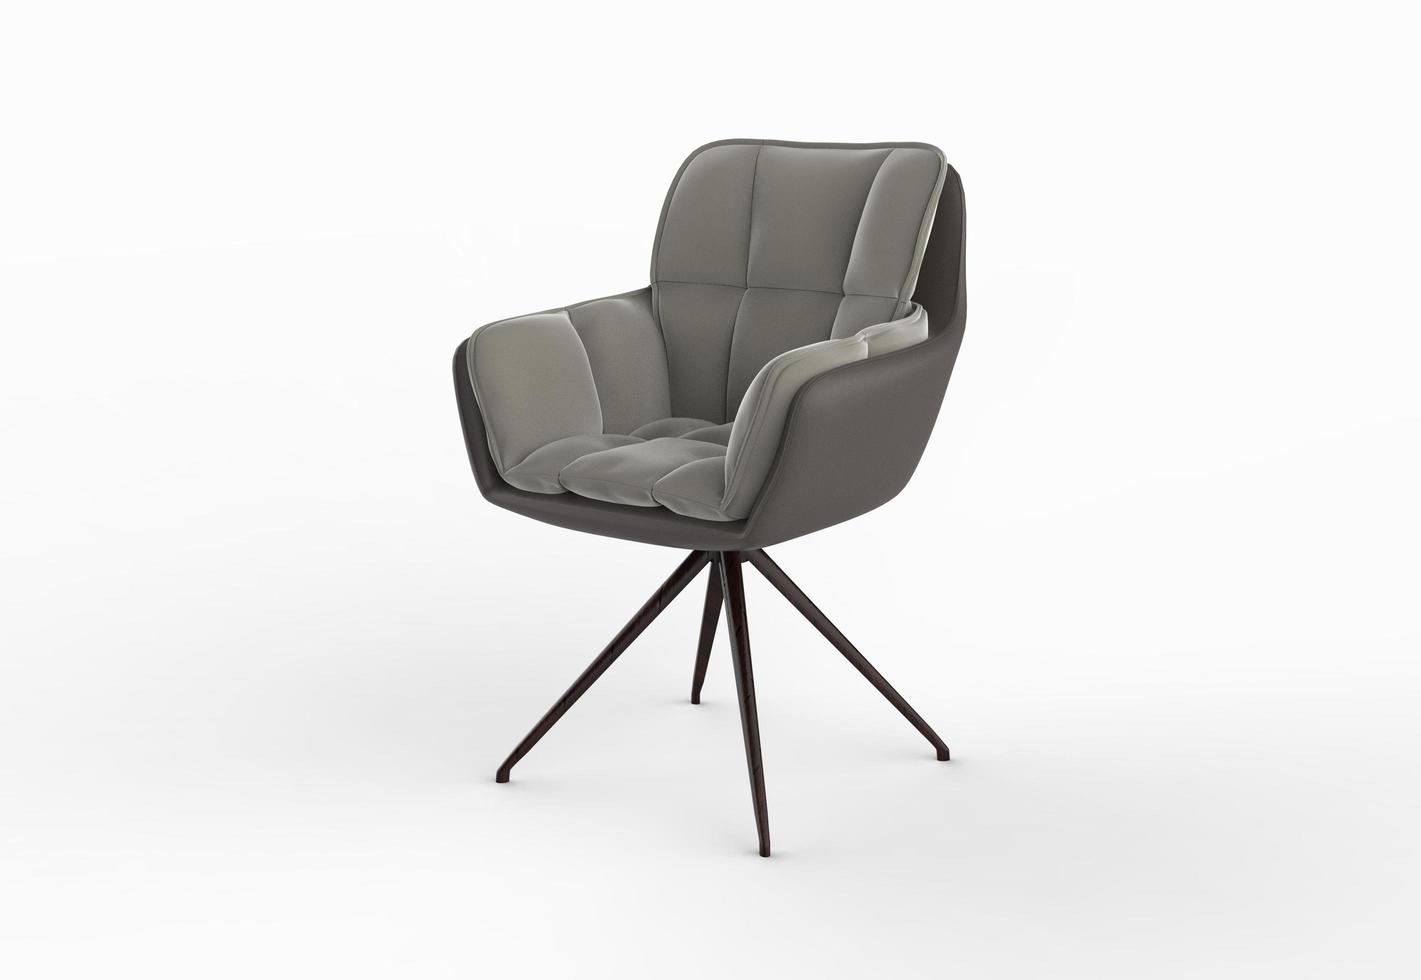 chaise isolée sur fond blanc, photo de design d'intérieur de meubles. chaise grise moderne.